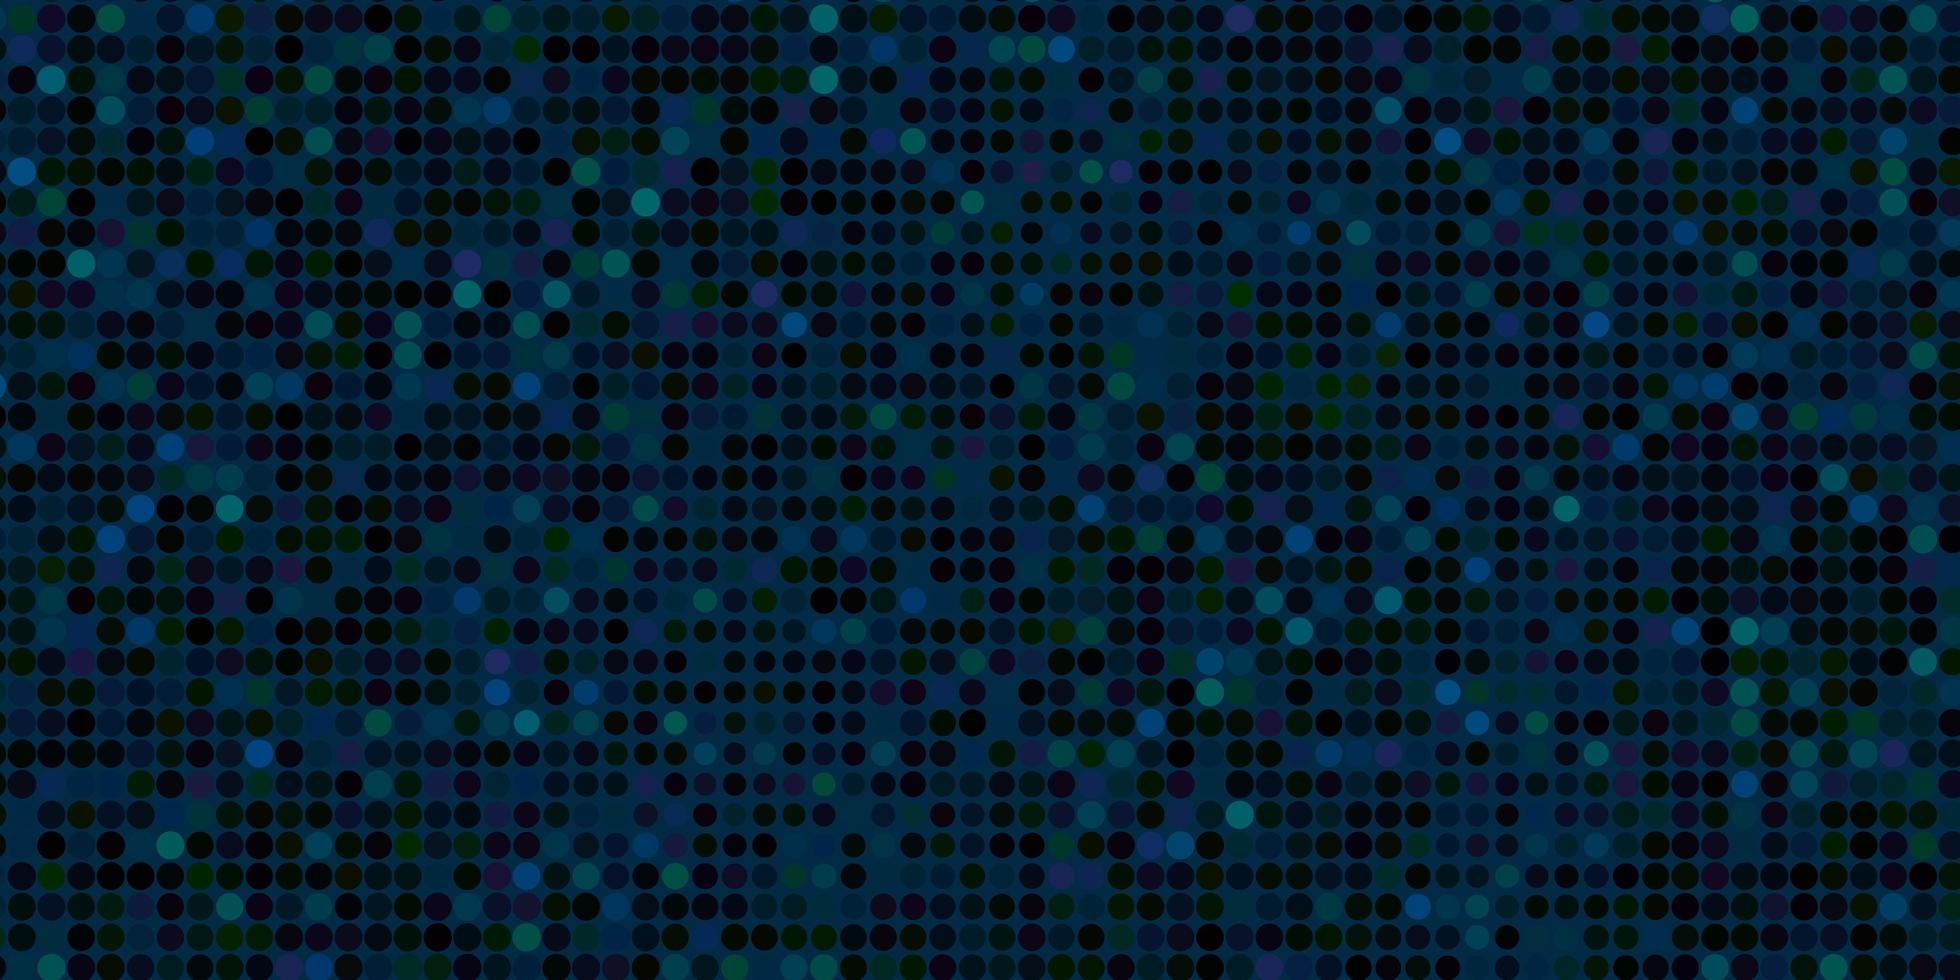 layout de vetor azul escuro e verde com formas de círculo. ilustração colorida com pontos de gradiente no estilo da natureza. padrão para sites.